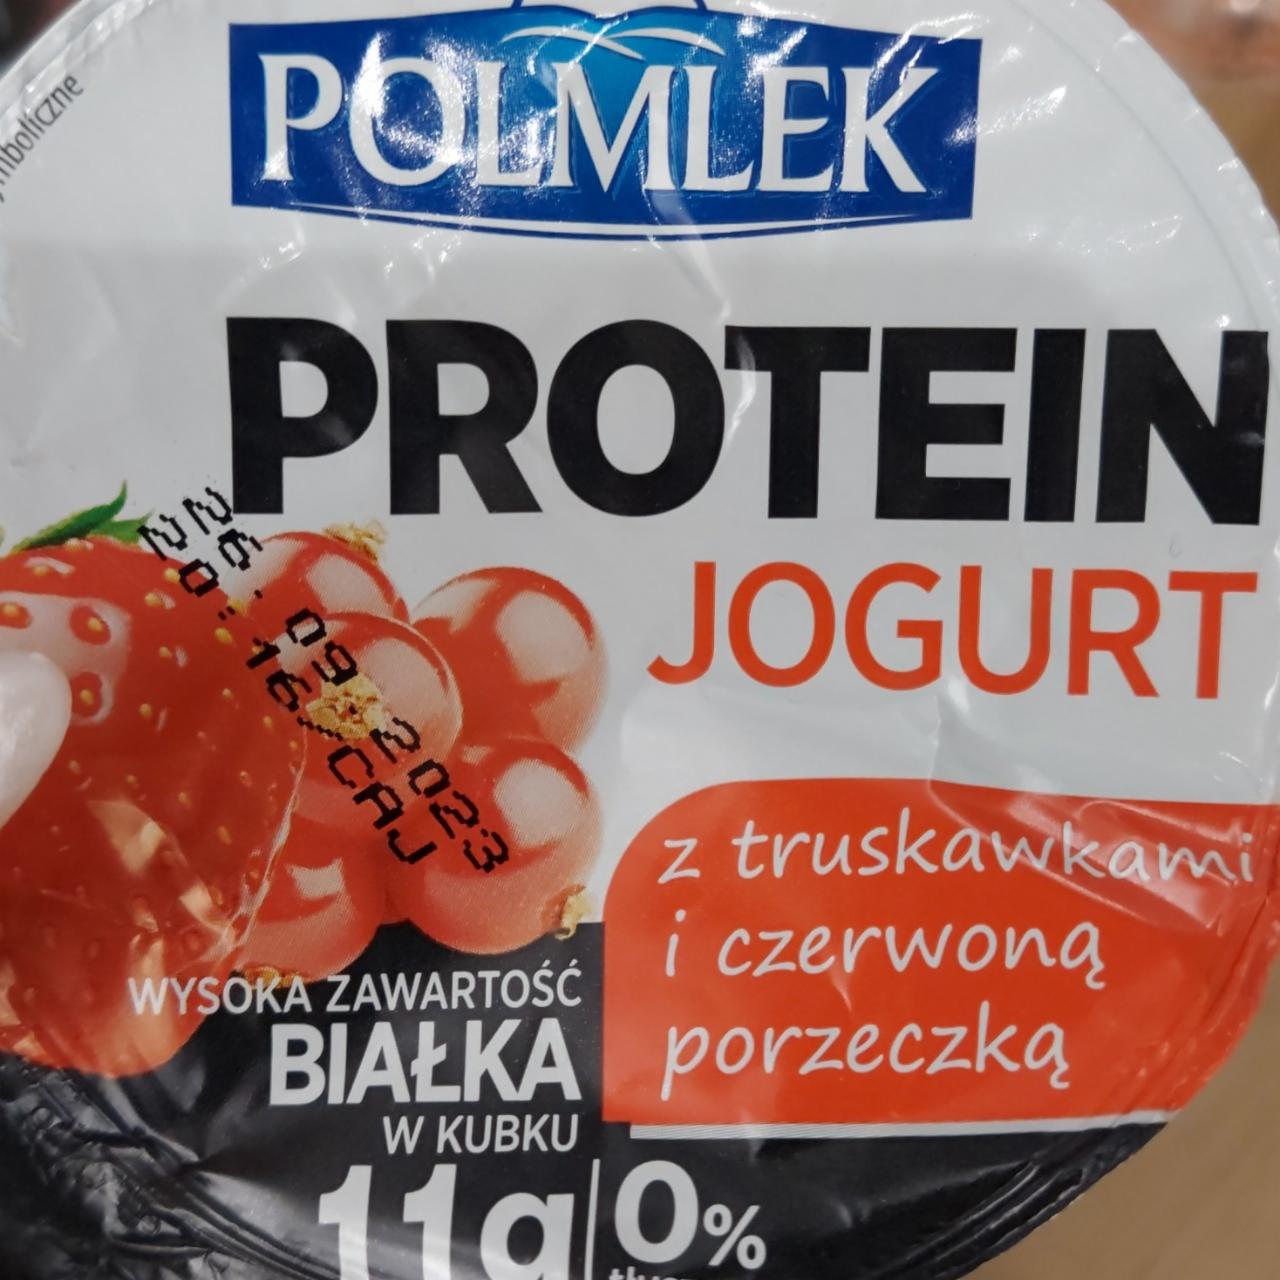 Фото - Йогурт протеїновий Protein Jogurt з полуницею і червоною порічкою Polmlek